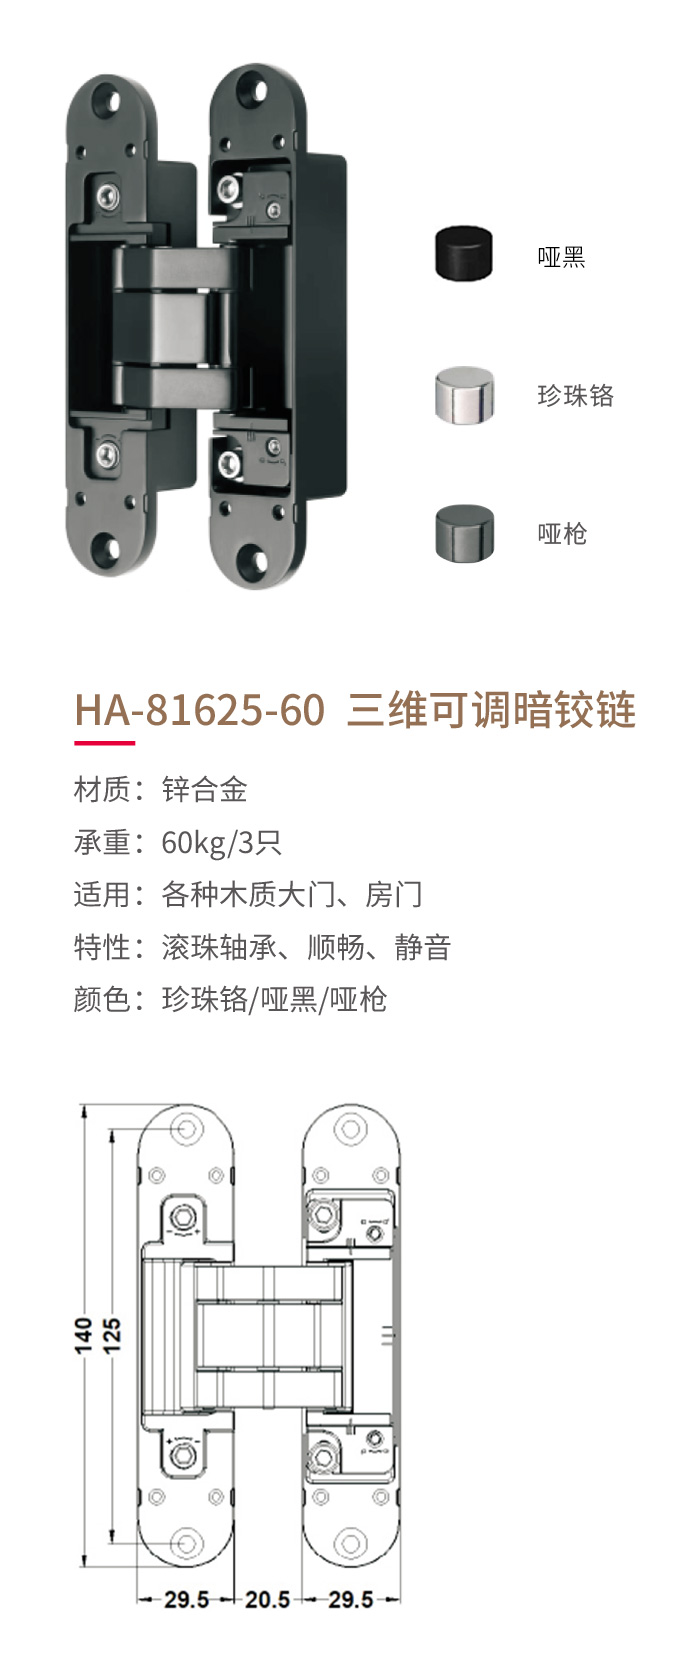 HA-81625-60-三維可調暗鉸鏈-1.jpg